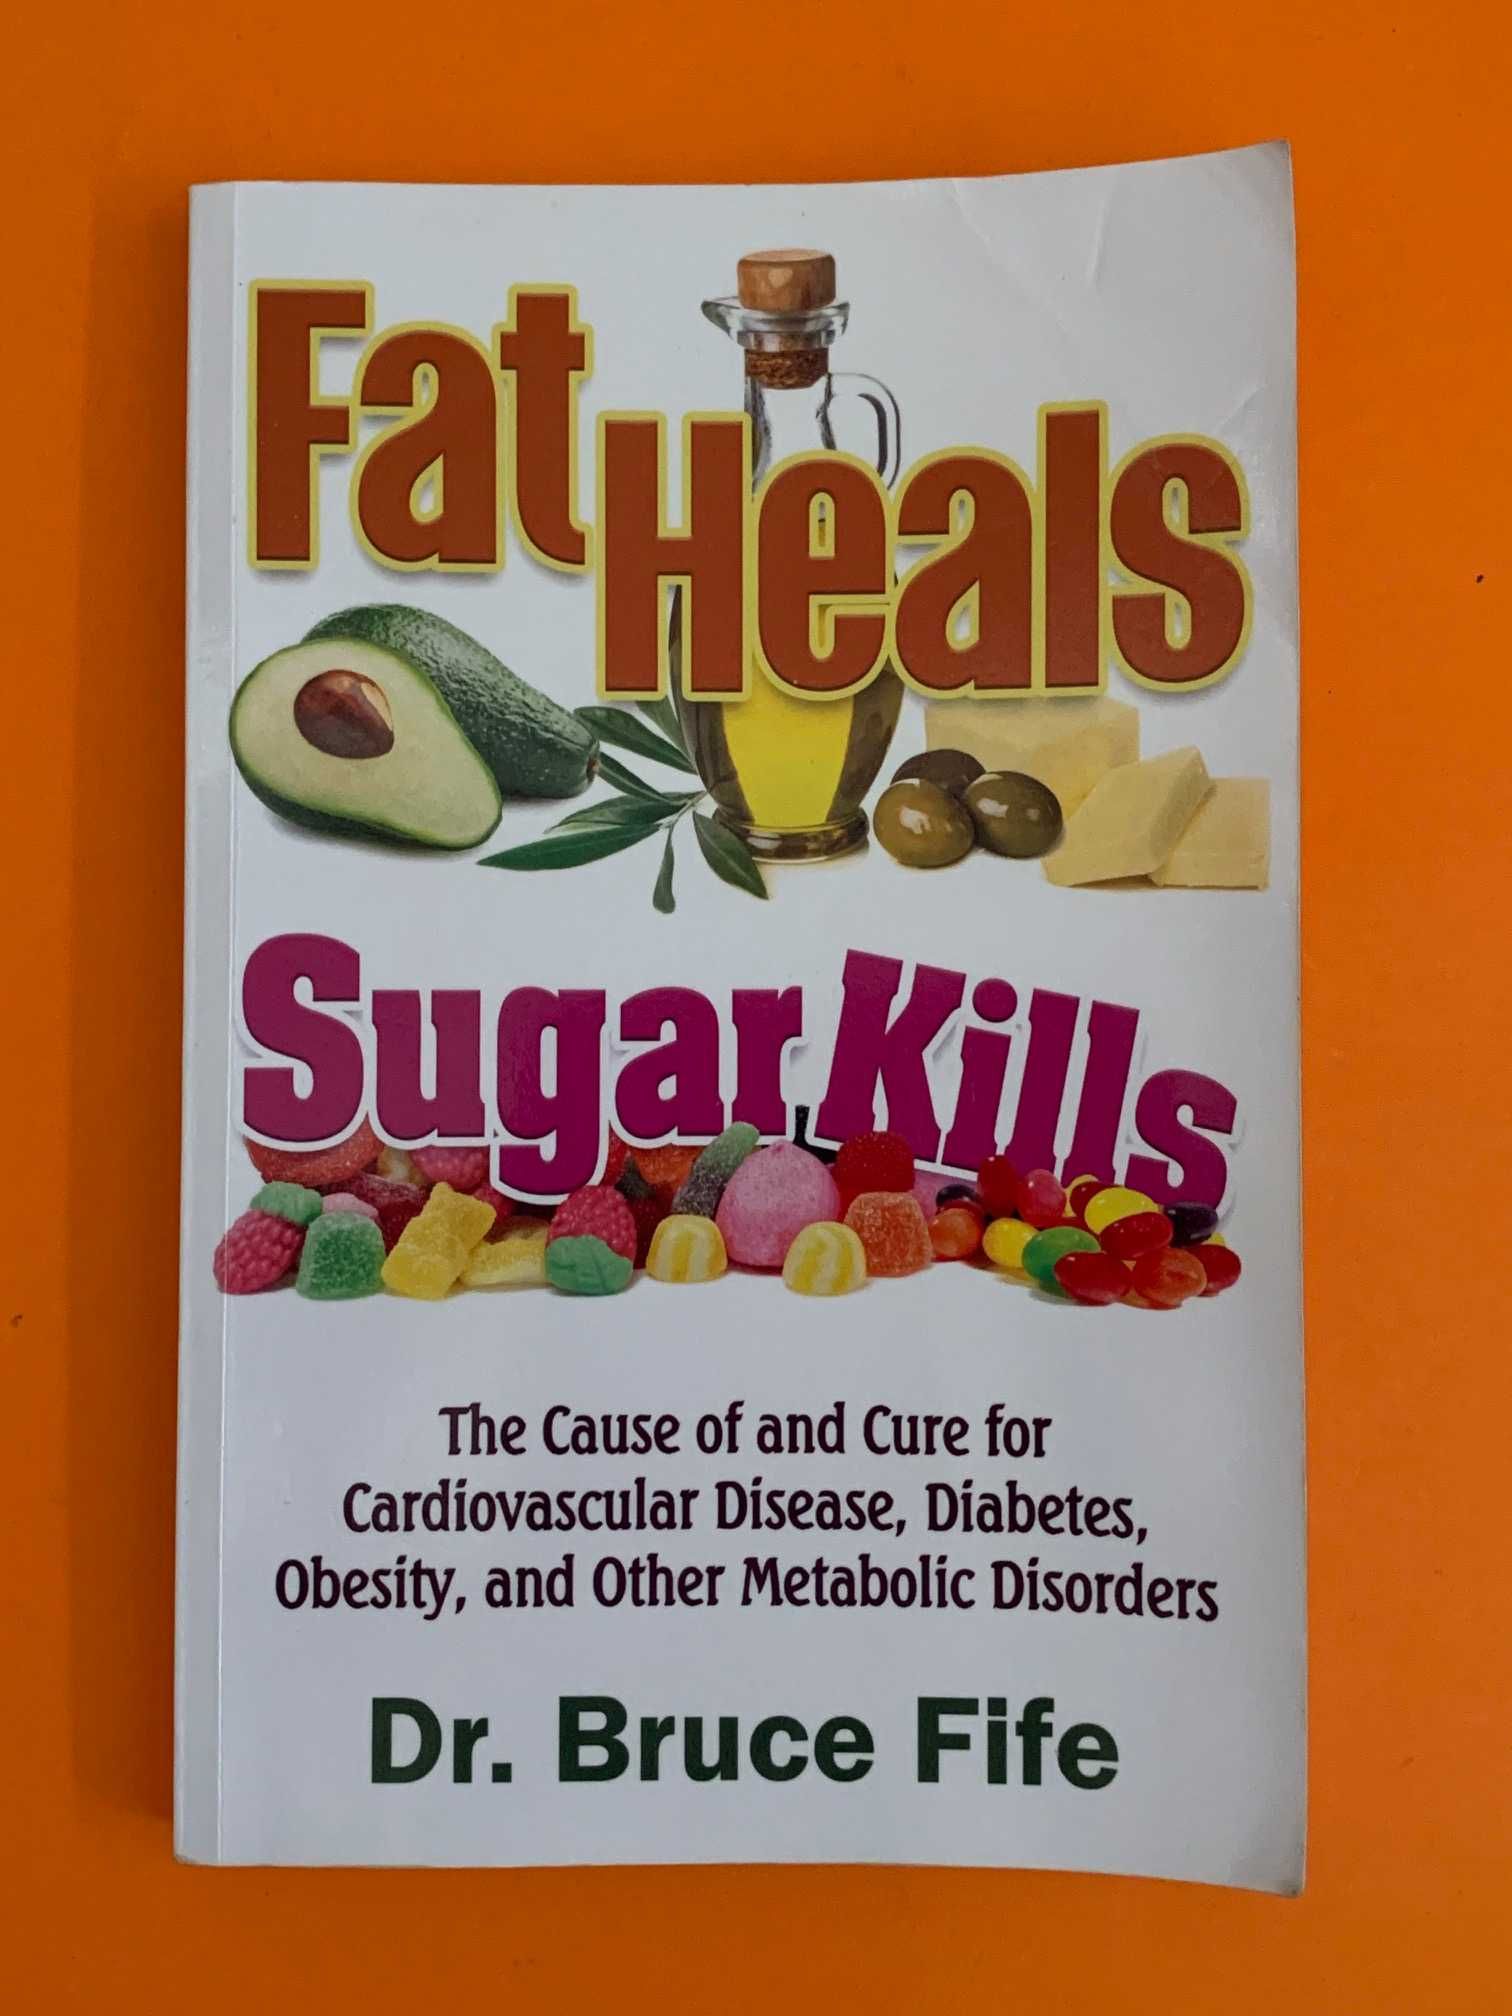 Fat heals, sugar kills - Dr. Bruce Fife